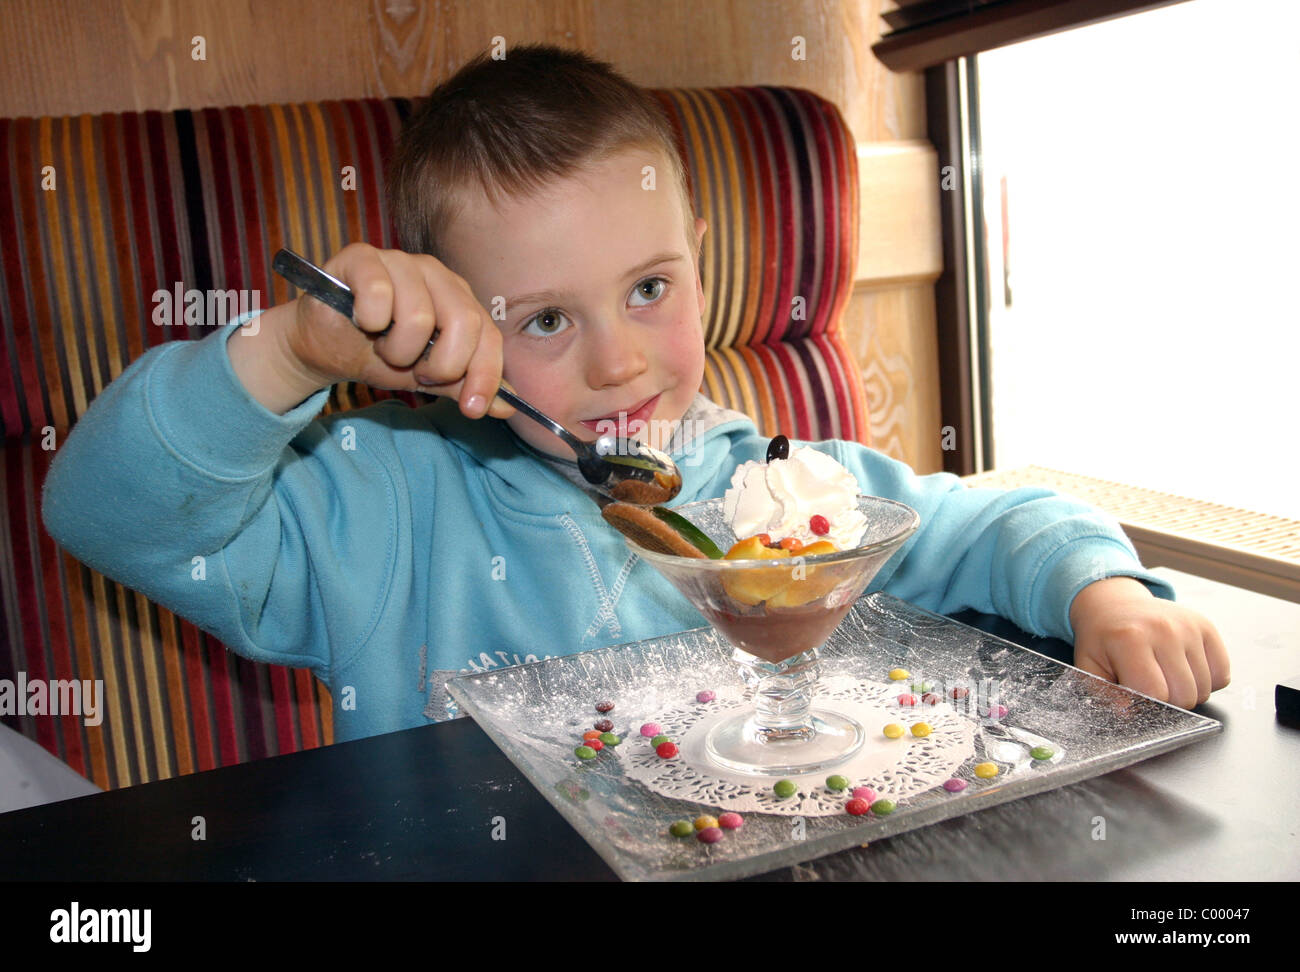 Young boy eating a peach melba dessert Stock Photo